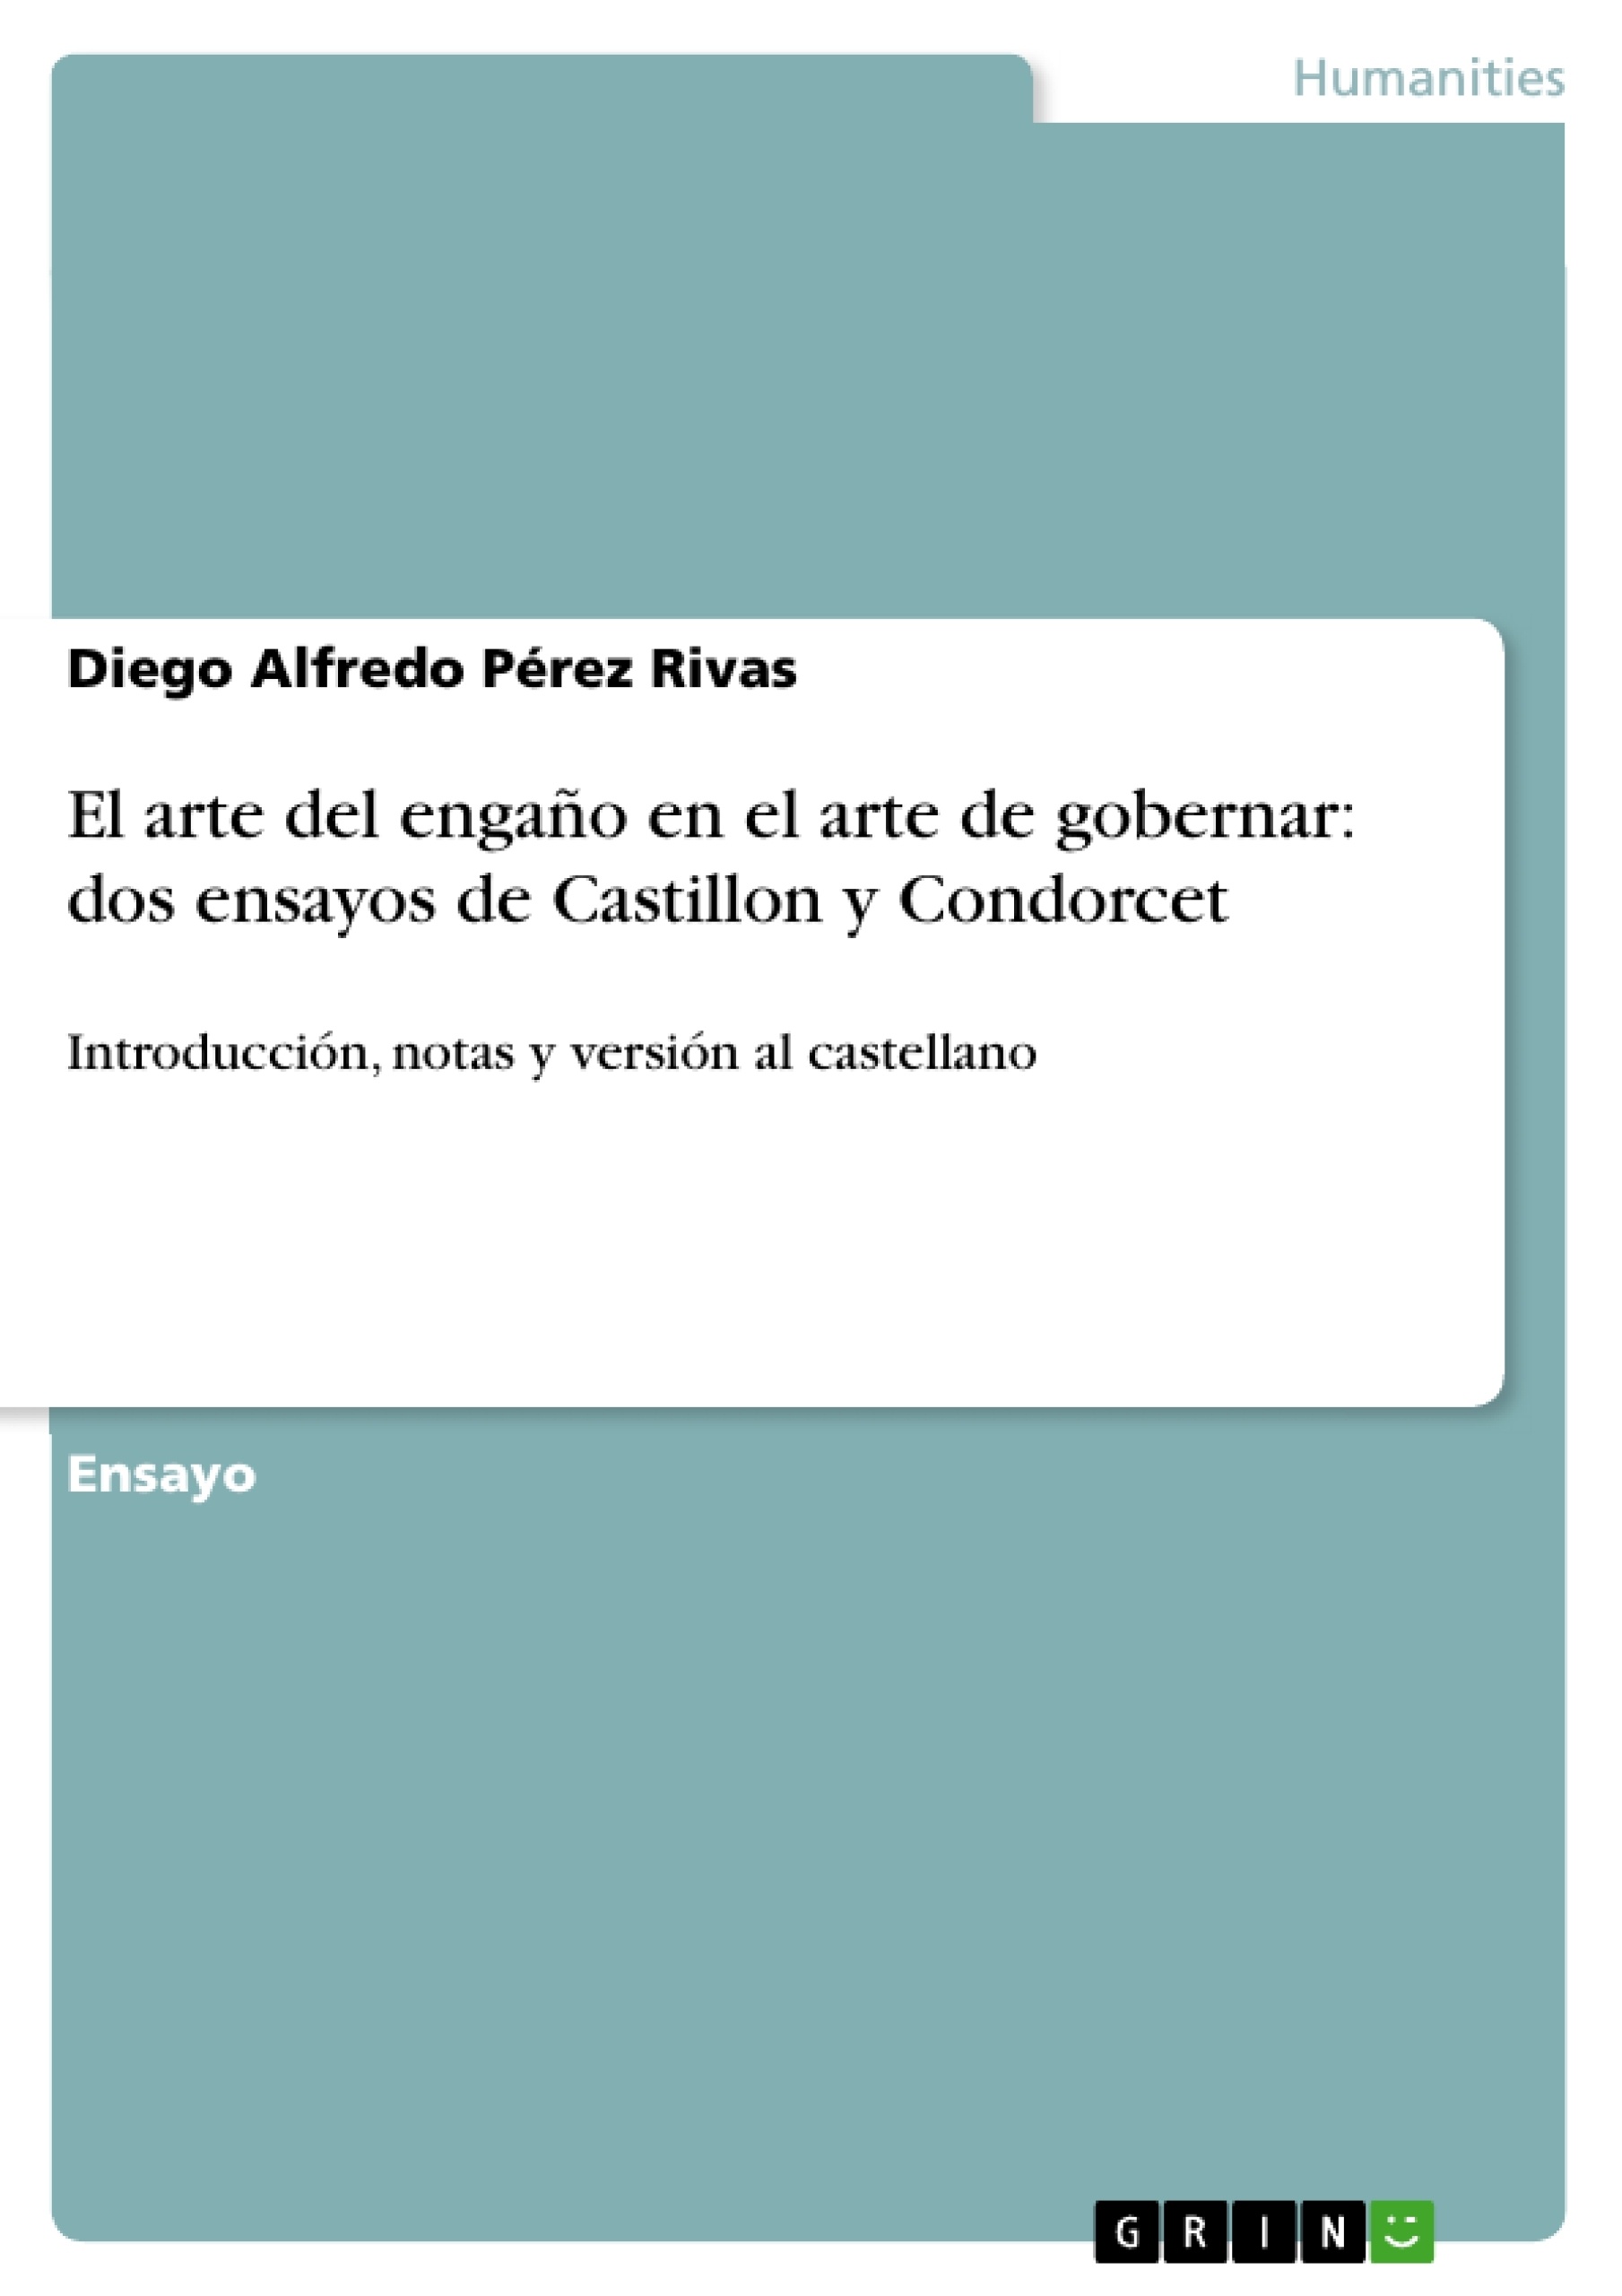 Titel: El arte del engaño en el arte de gobernar: dos ensayos de Castillon y Condorcet